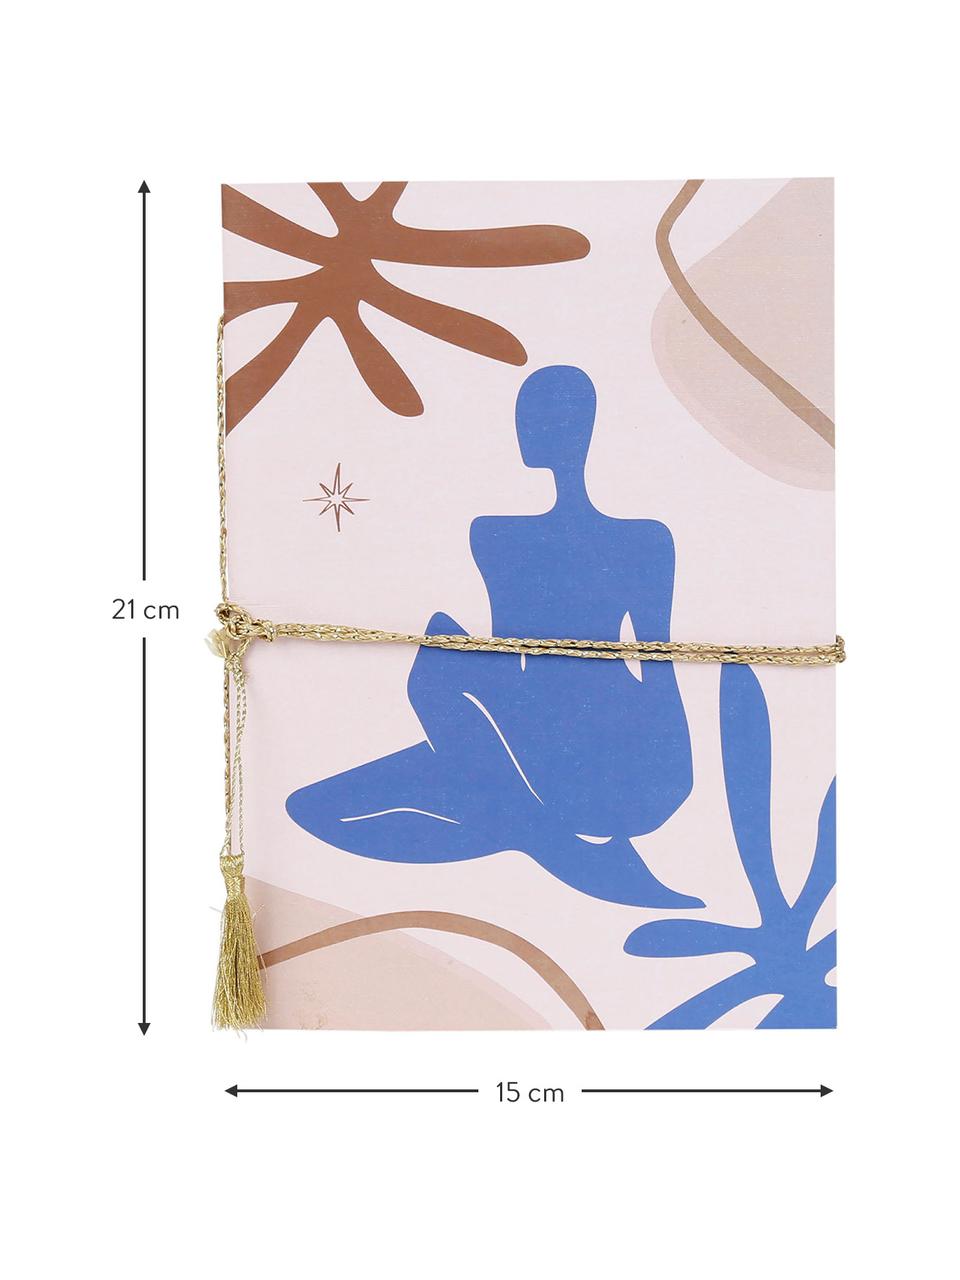 Cuaderno Visionnary, Rosa, azul, marrón, An 15 x Al 21 cm